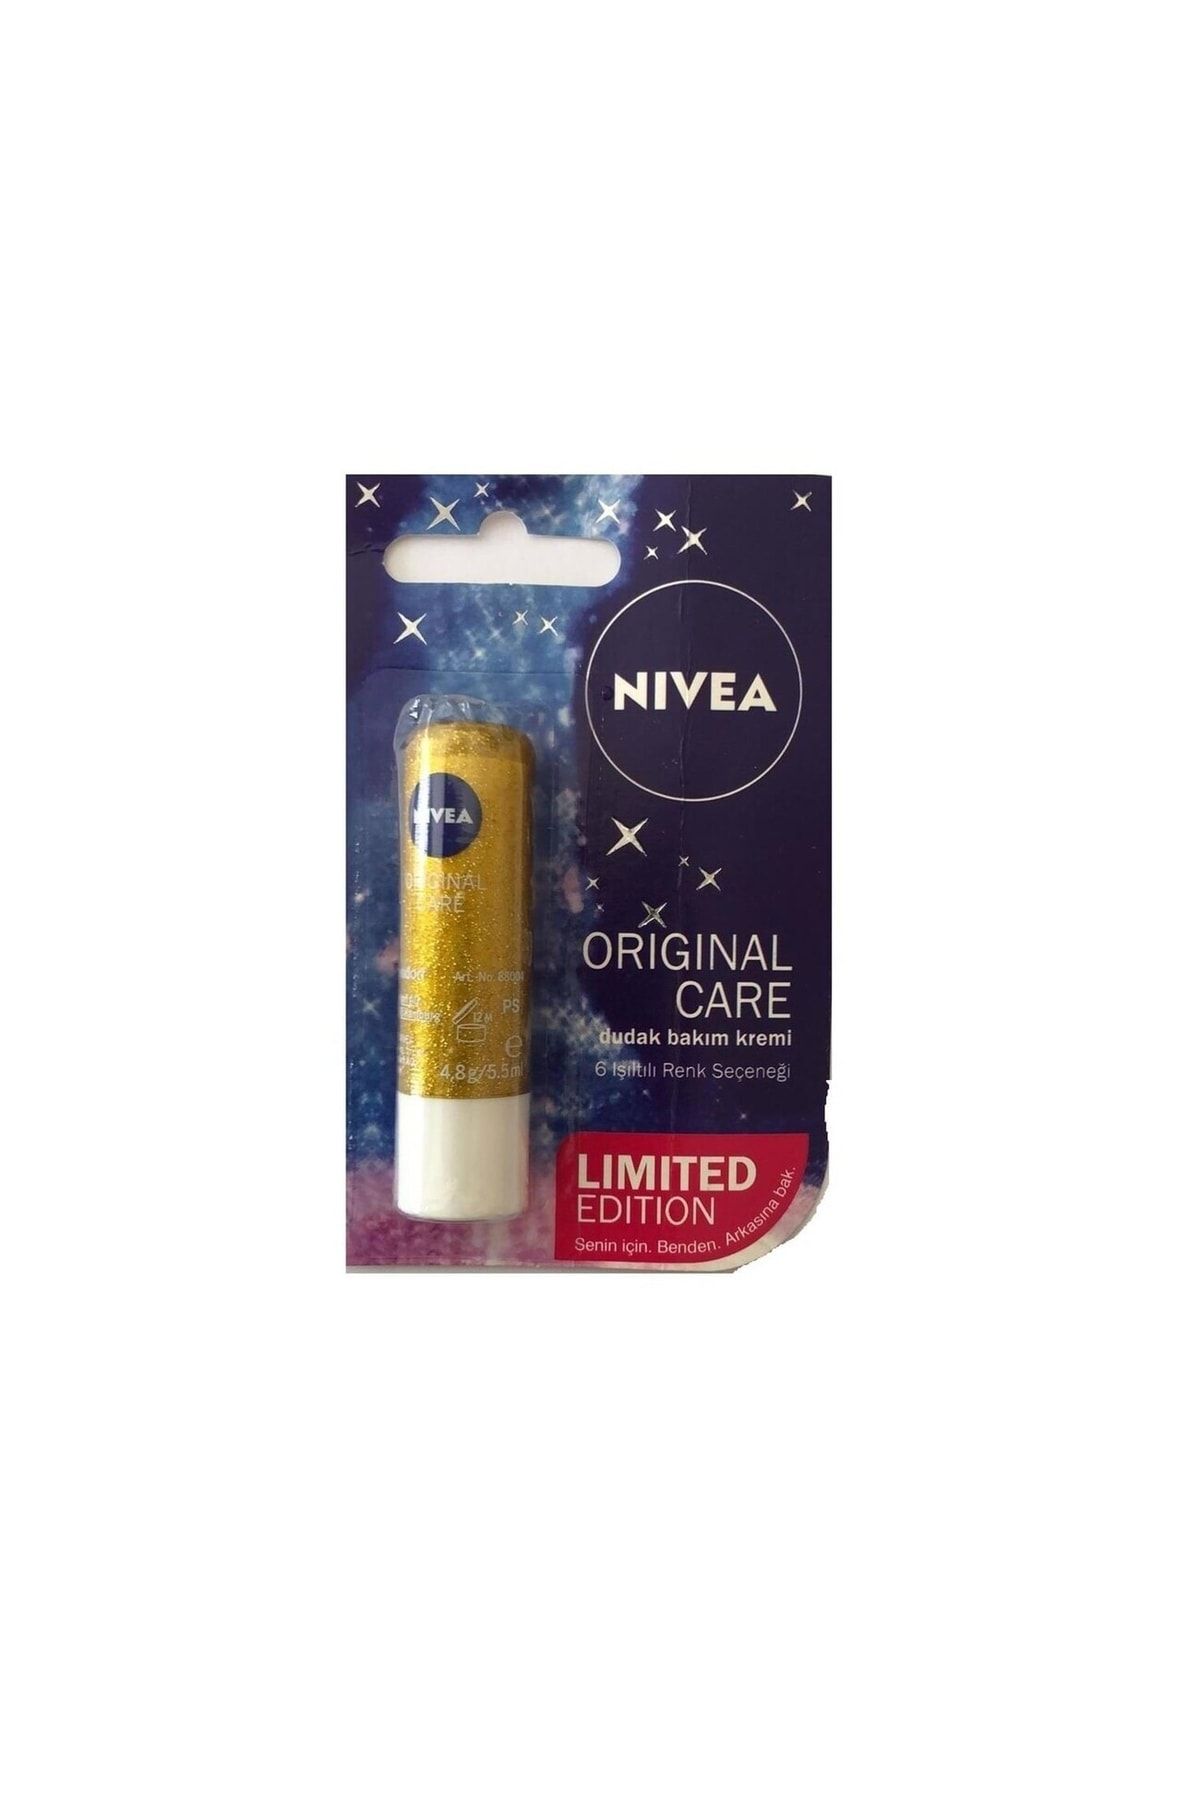 NIVEA Original Care Limited Edition Dudak Bakım Kremi Işıltılı Renkler Altın Işıltısı